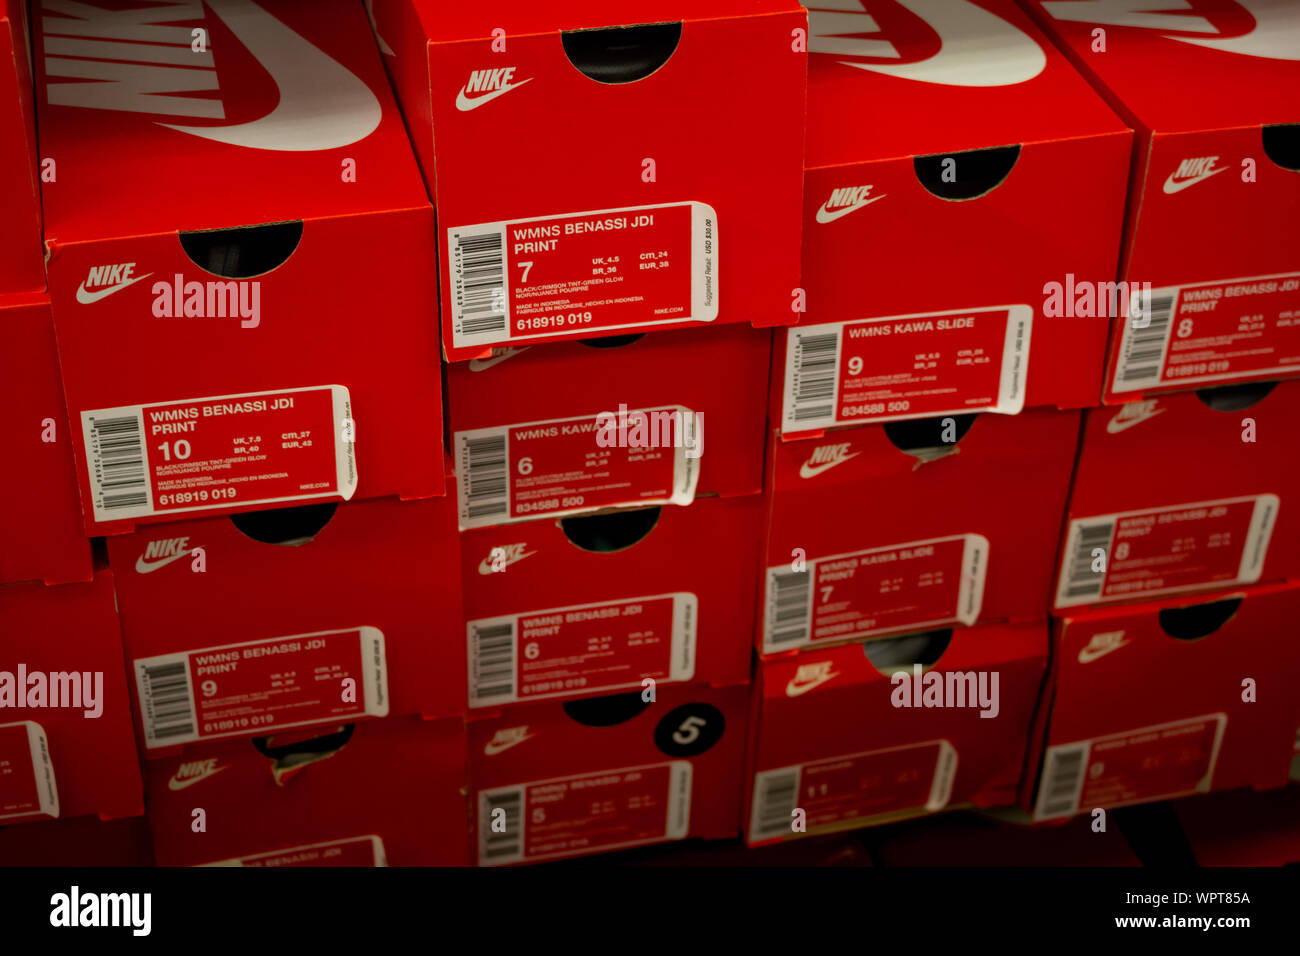 Los Angeles, Californie, États-Unis - 02-22-19: Une vue des boîtes à chaussures Nike, exposées dans un magasin de détail local. Banque D'Images